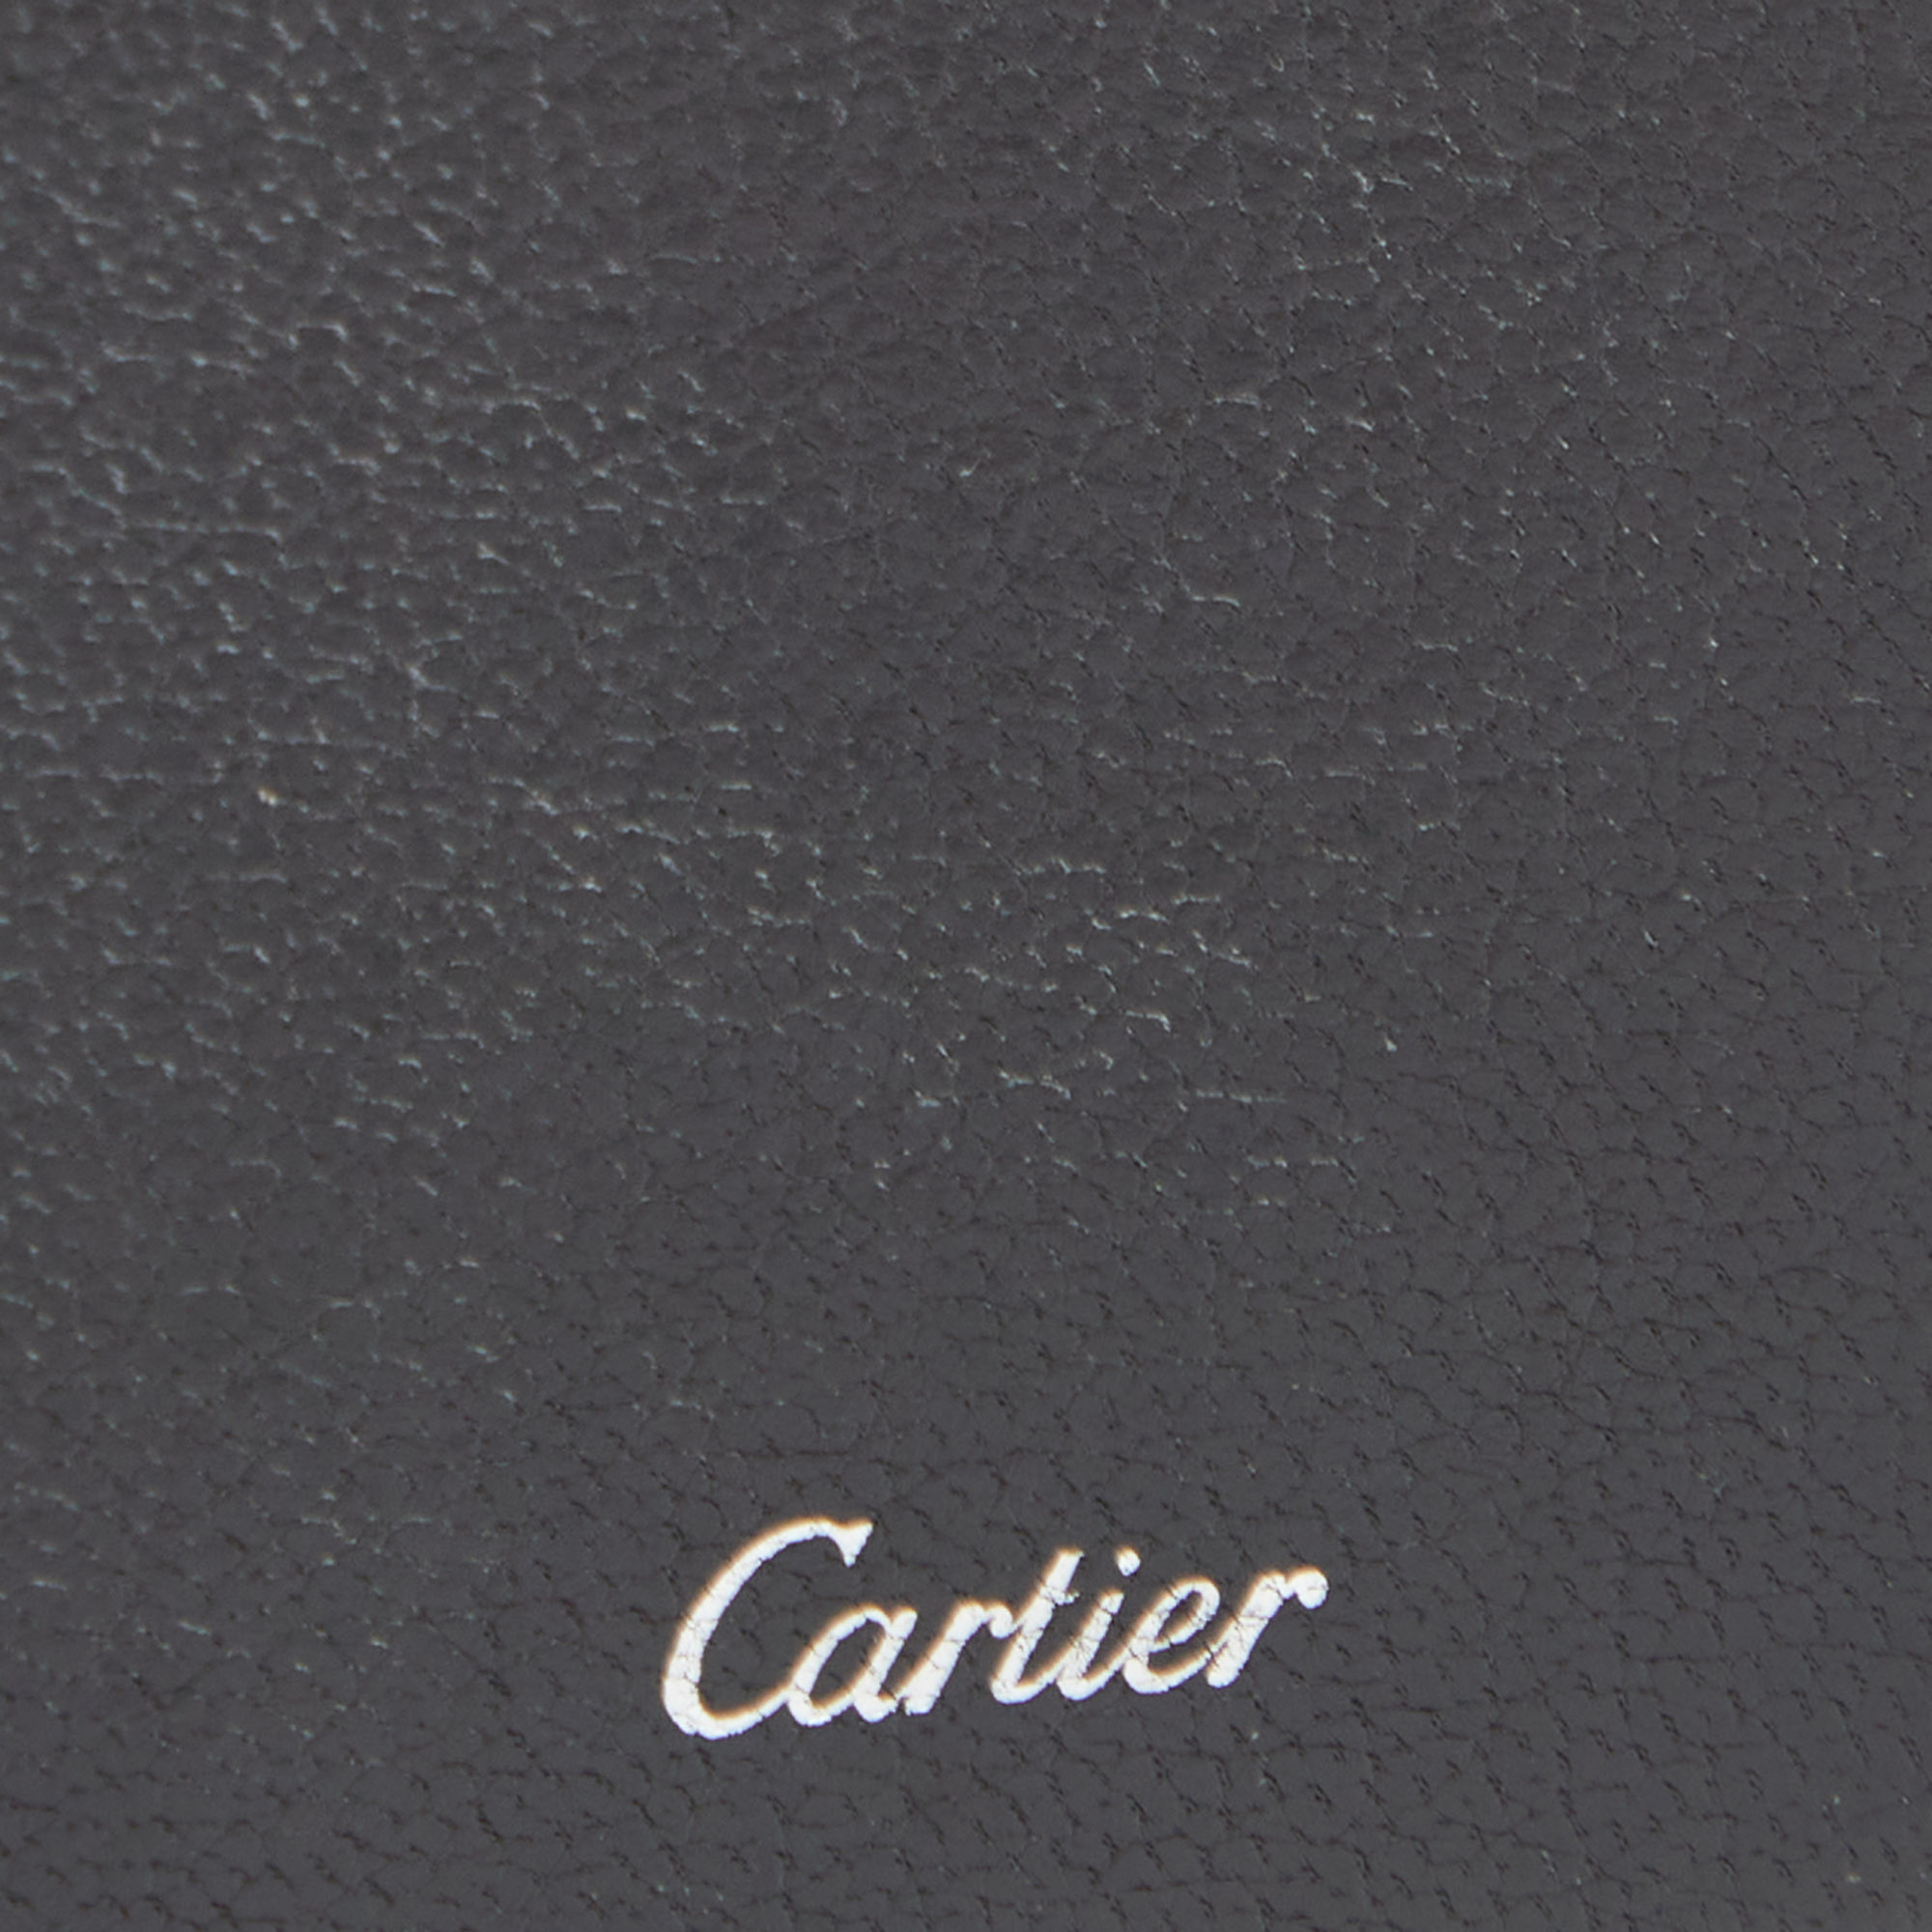 Cartier Dark Brown Leather Phone Case